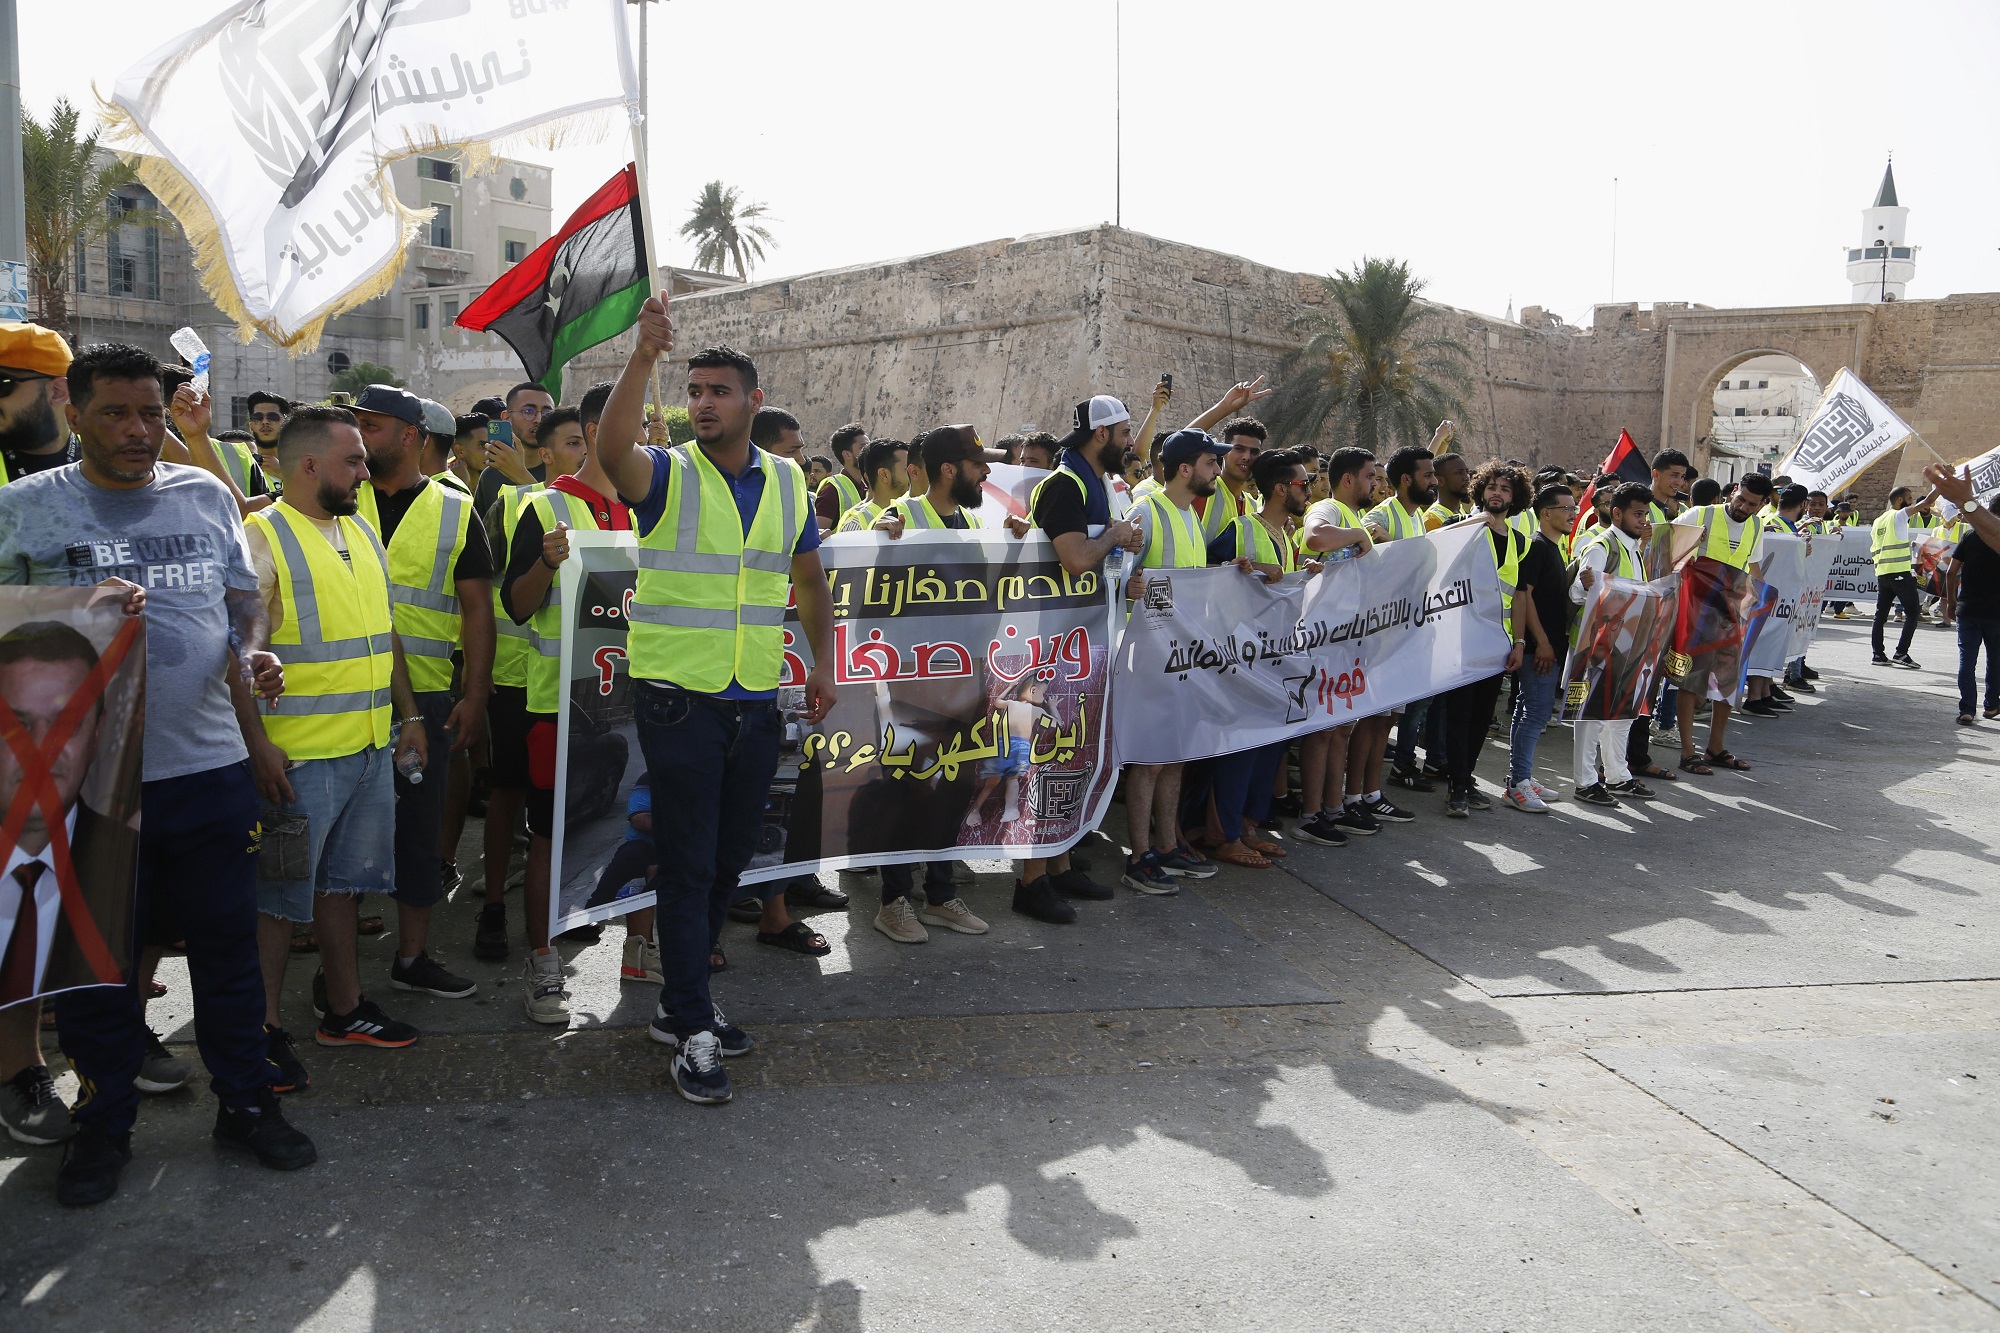 Λιβύη: Μήνυμα των ΗΠΑ προς τα κόμματα της χώρας για αποκλιμάκωση της βίας